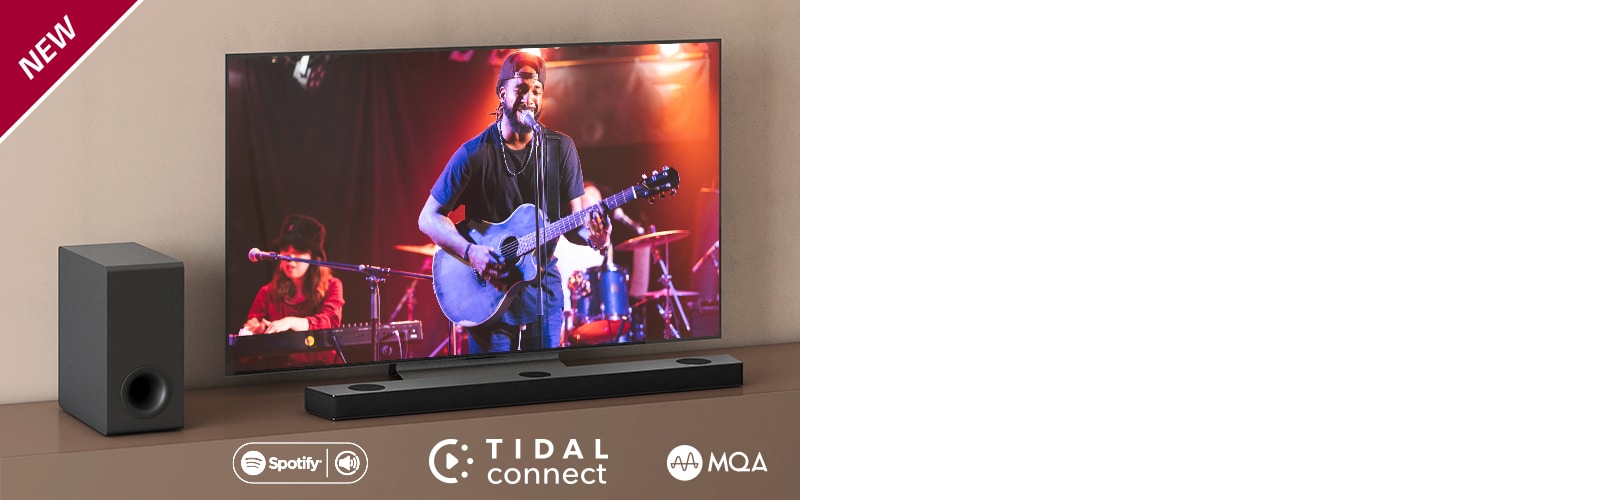 LG televizorius padėtas ant rudos lentynos, o „LG Sound Bar S95QR“ – priešais televizorių. Žemųjų dažnių garsiakalbis yra kairėje televizoriaus pusėje. Televizoriuje rodoma koncerto scena. Viršutiniame kairiajame kampe parodytas ženklas NEW.